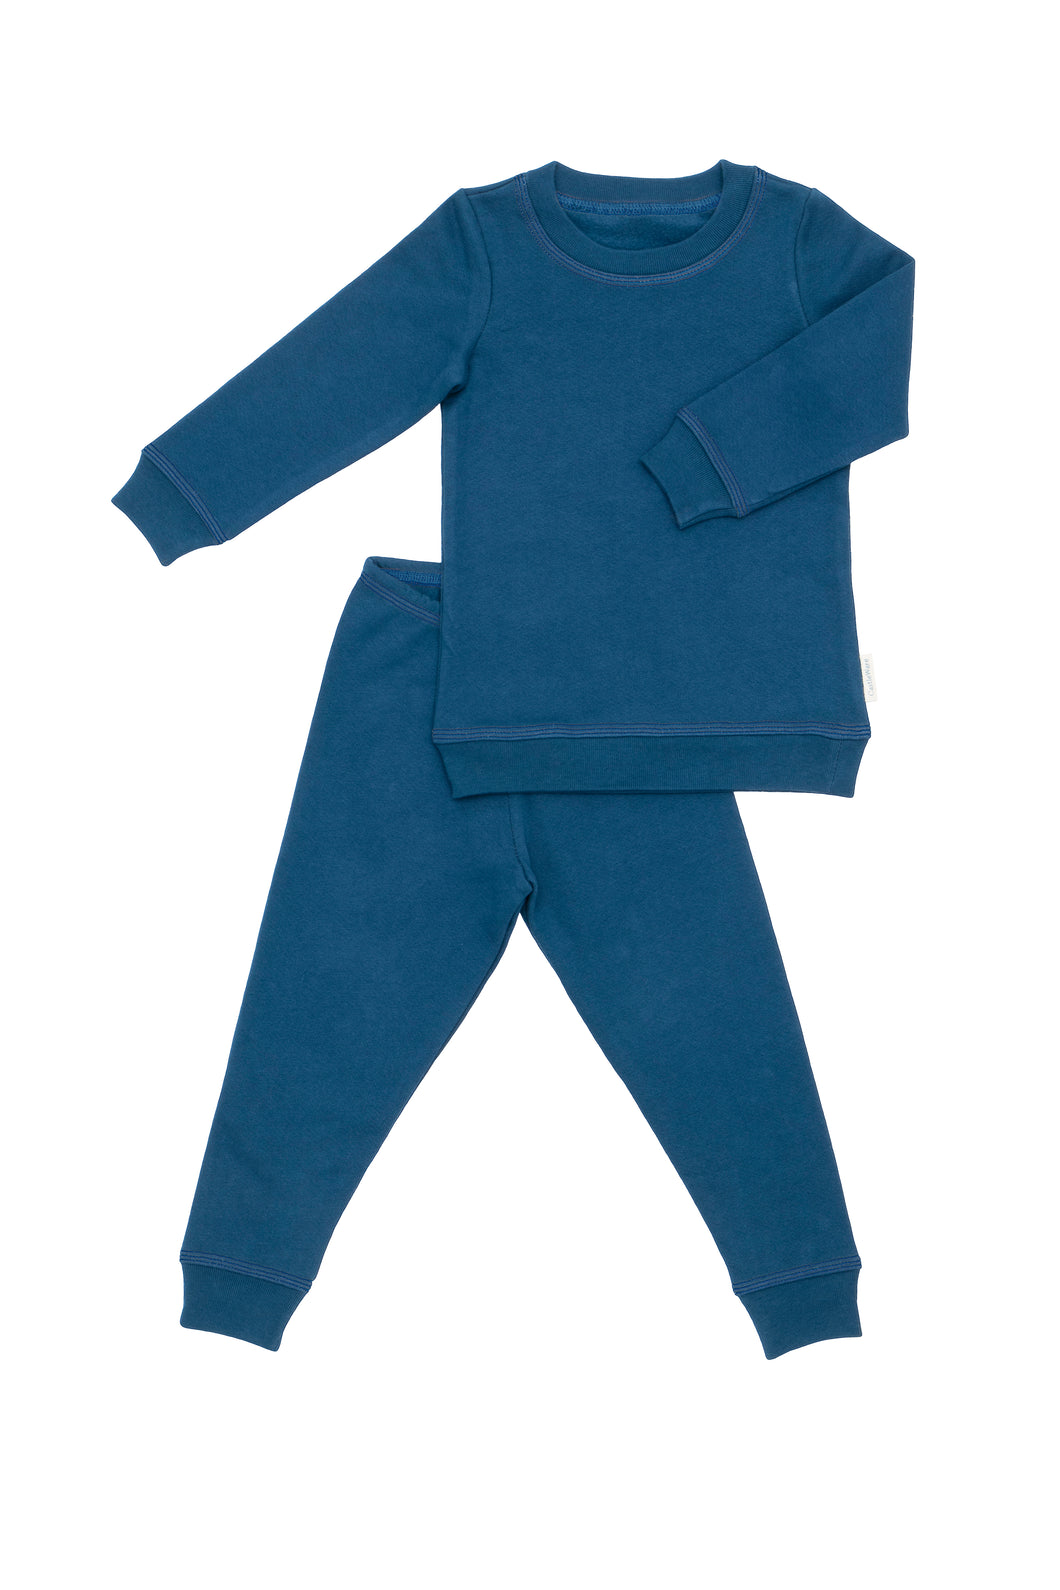 Unisex Thermal-Knit Leggings 2-Pack for Toddler